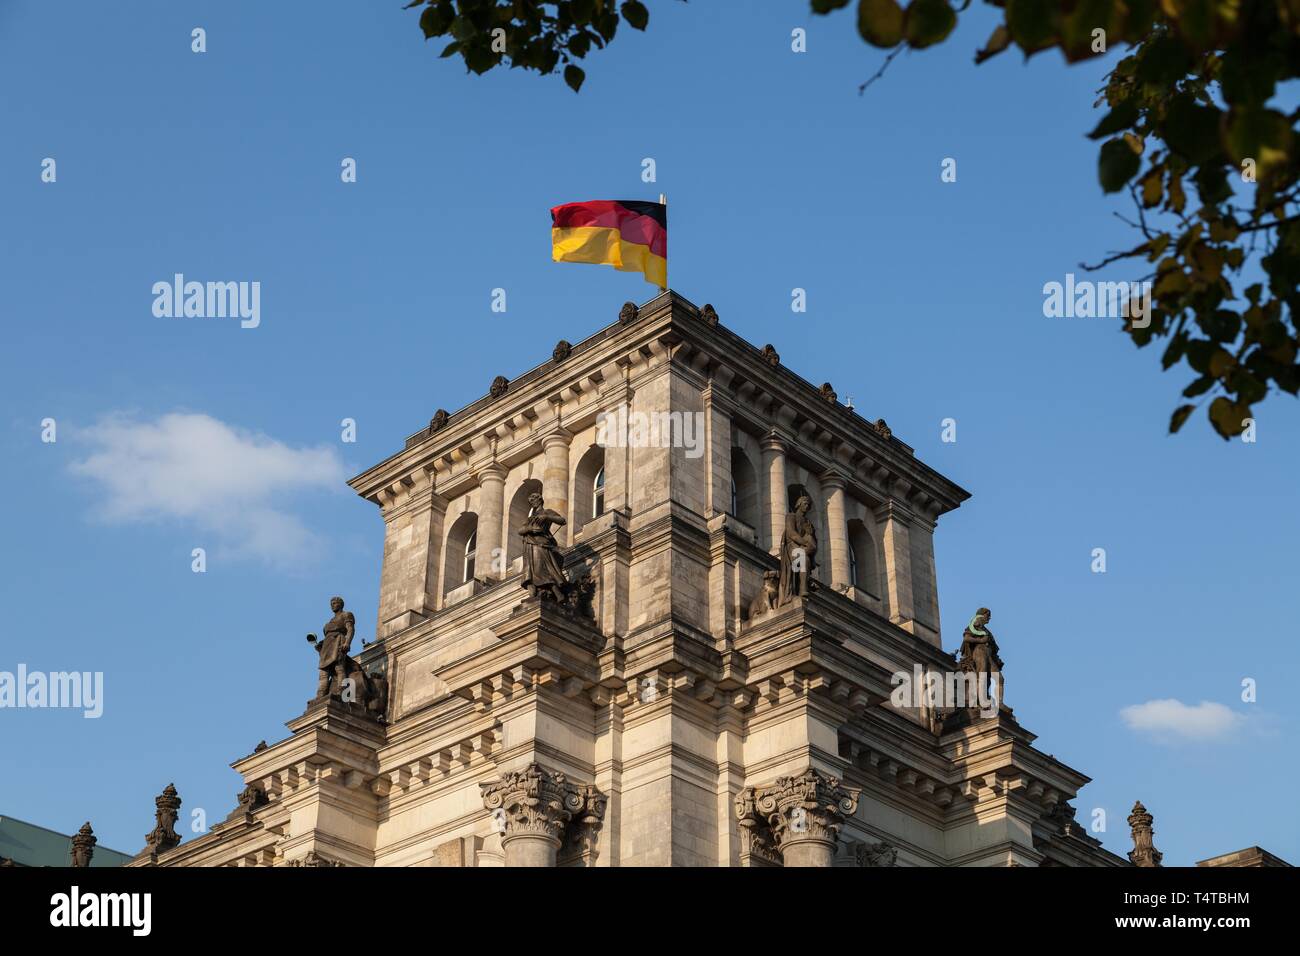 Le Parlement allemand, vue partielle, Reichstag, quartier du gouvernement, Berlin, Germany, Europe Banque D'Images